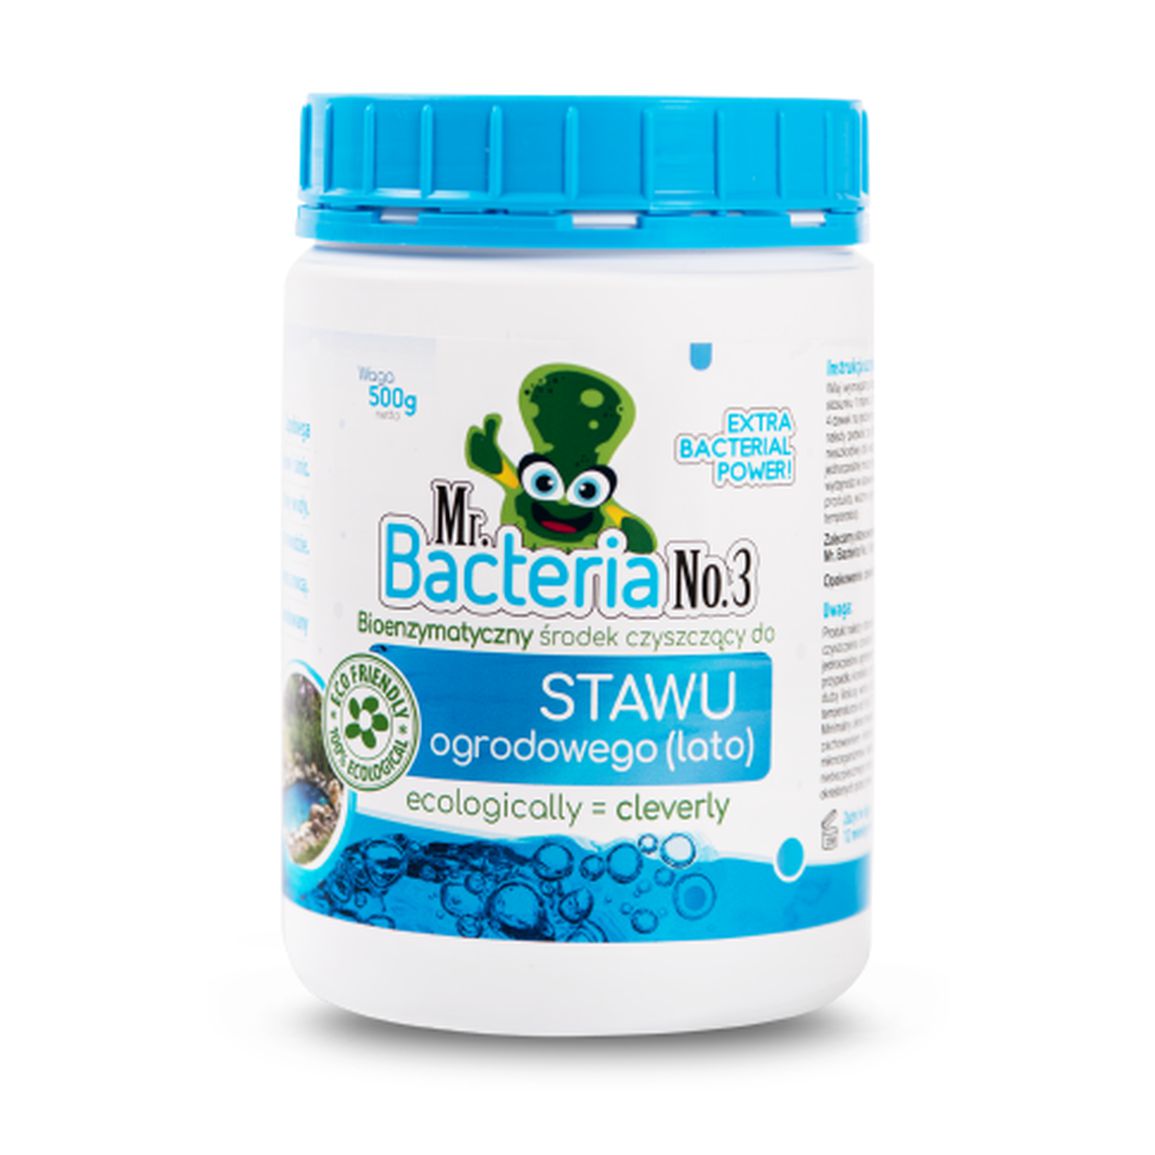 Bioenzymatyczny środek czyszczący do STAWU ogrodowego (lato) 500g